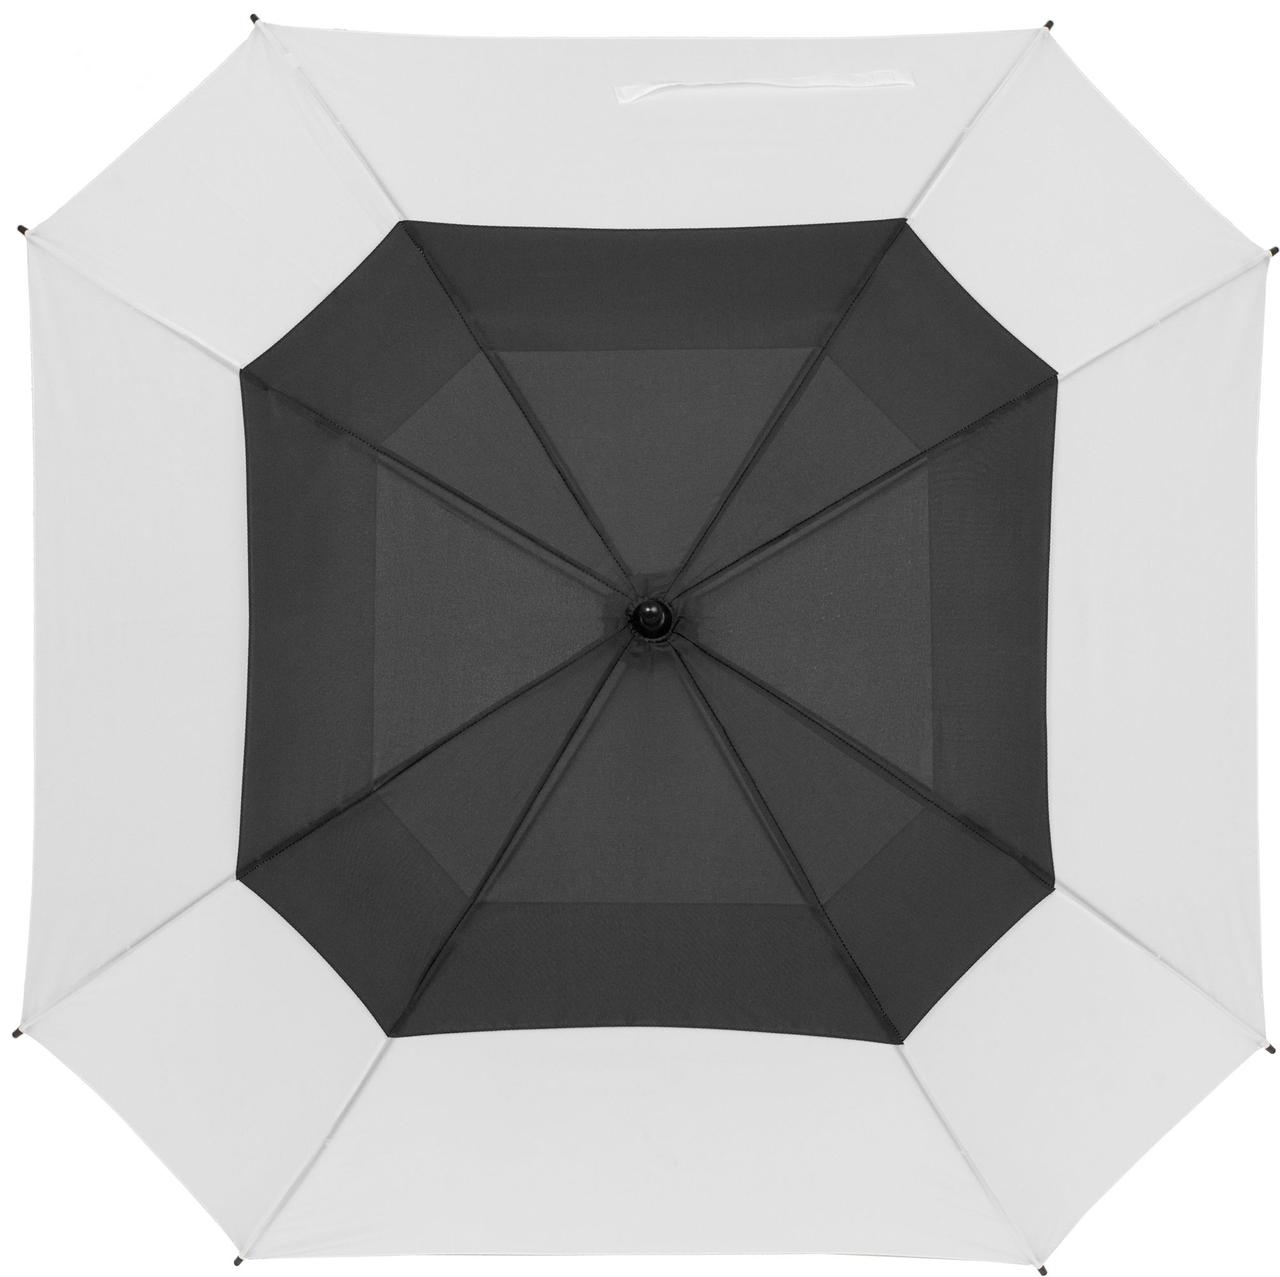 Квадратный зонт-трость Octagon, черный с белым (артикул 12369.36), фото 1